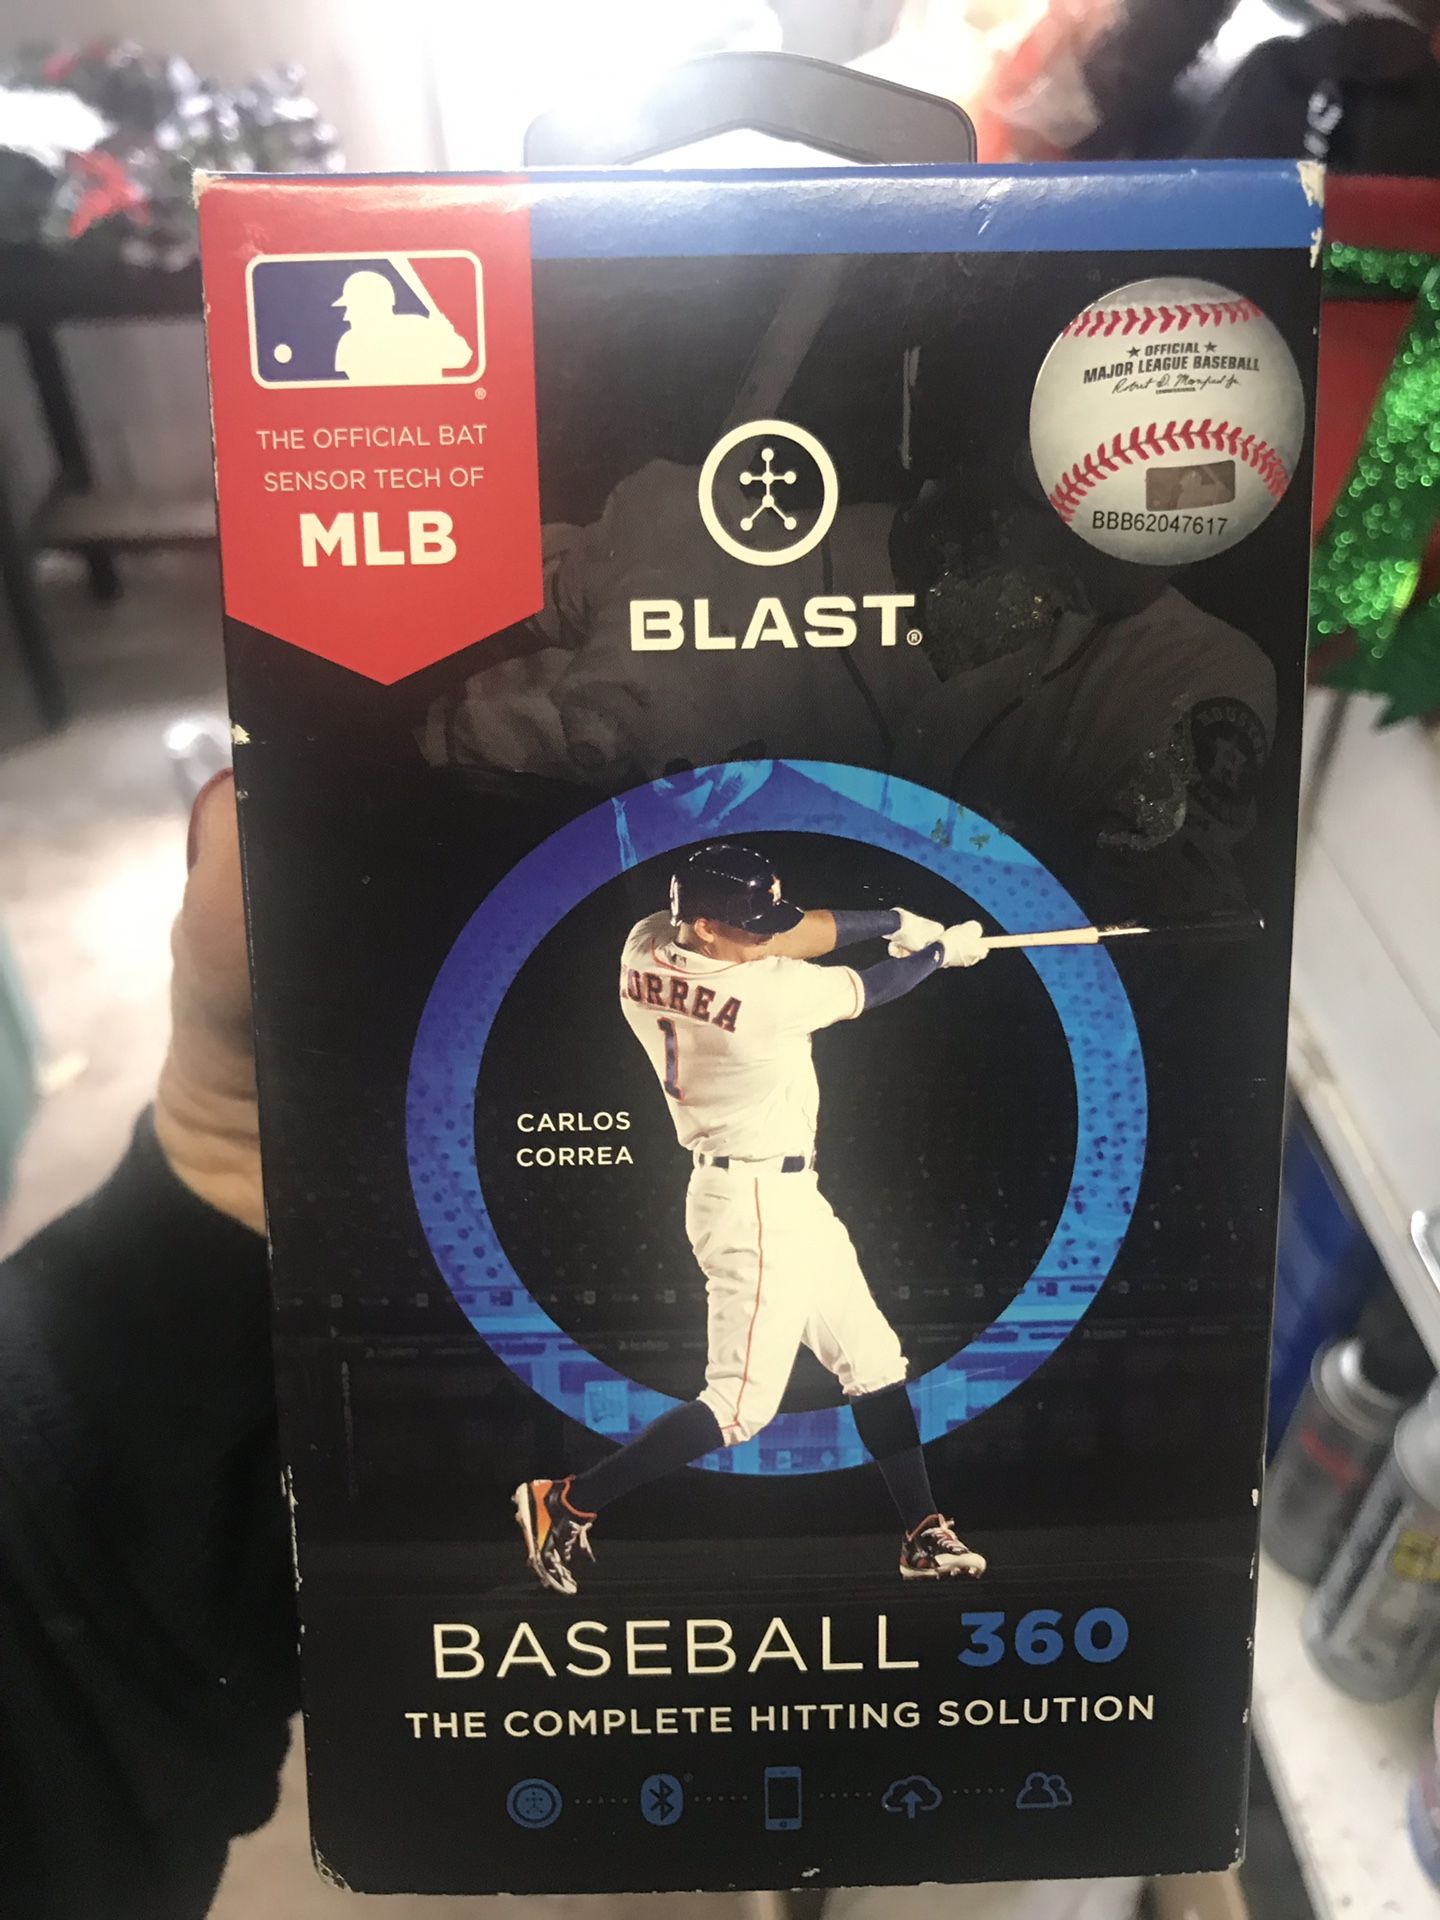 Blast Baseball 360 bat swing analyzer -New never opened